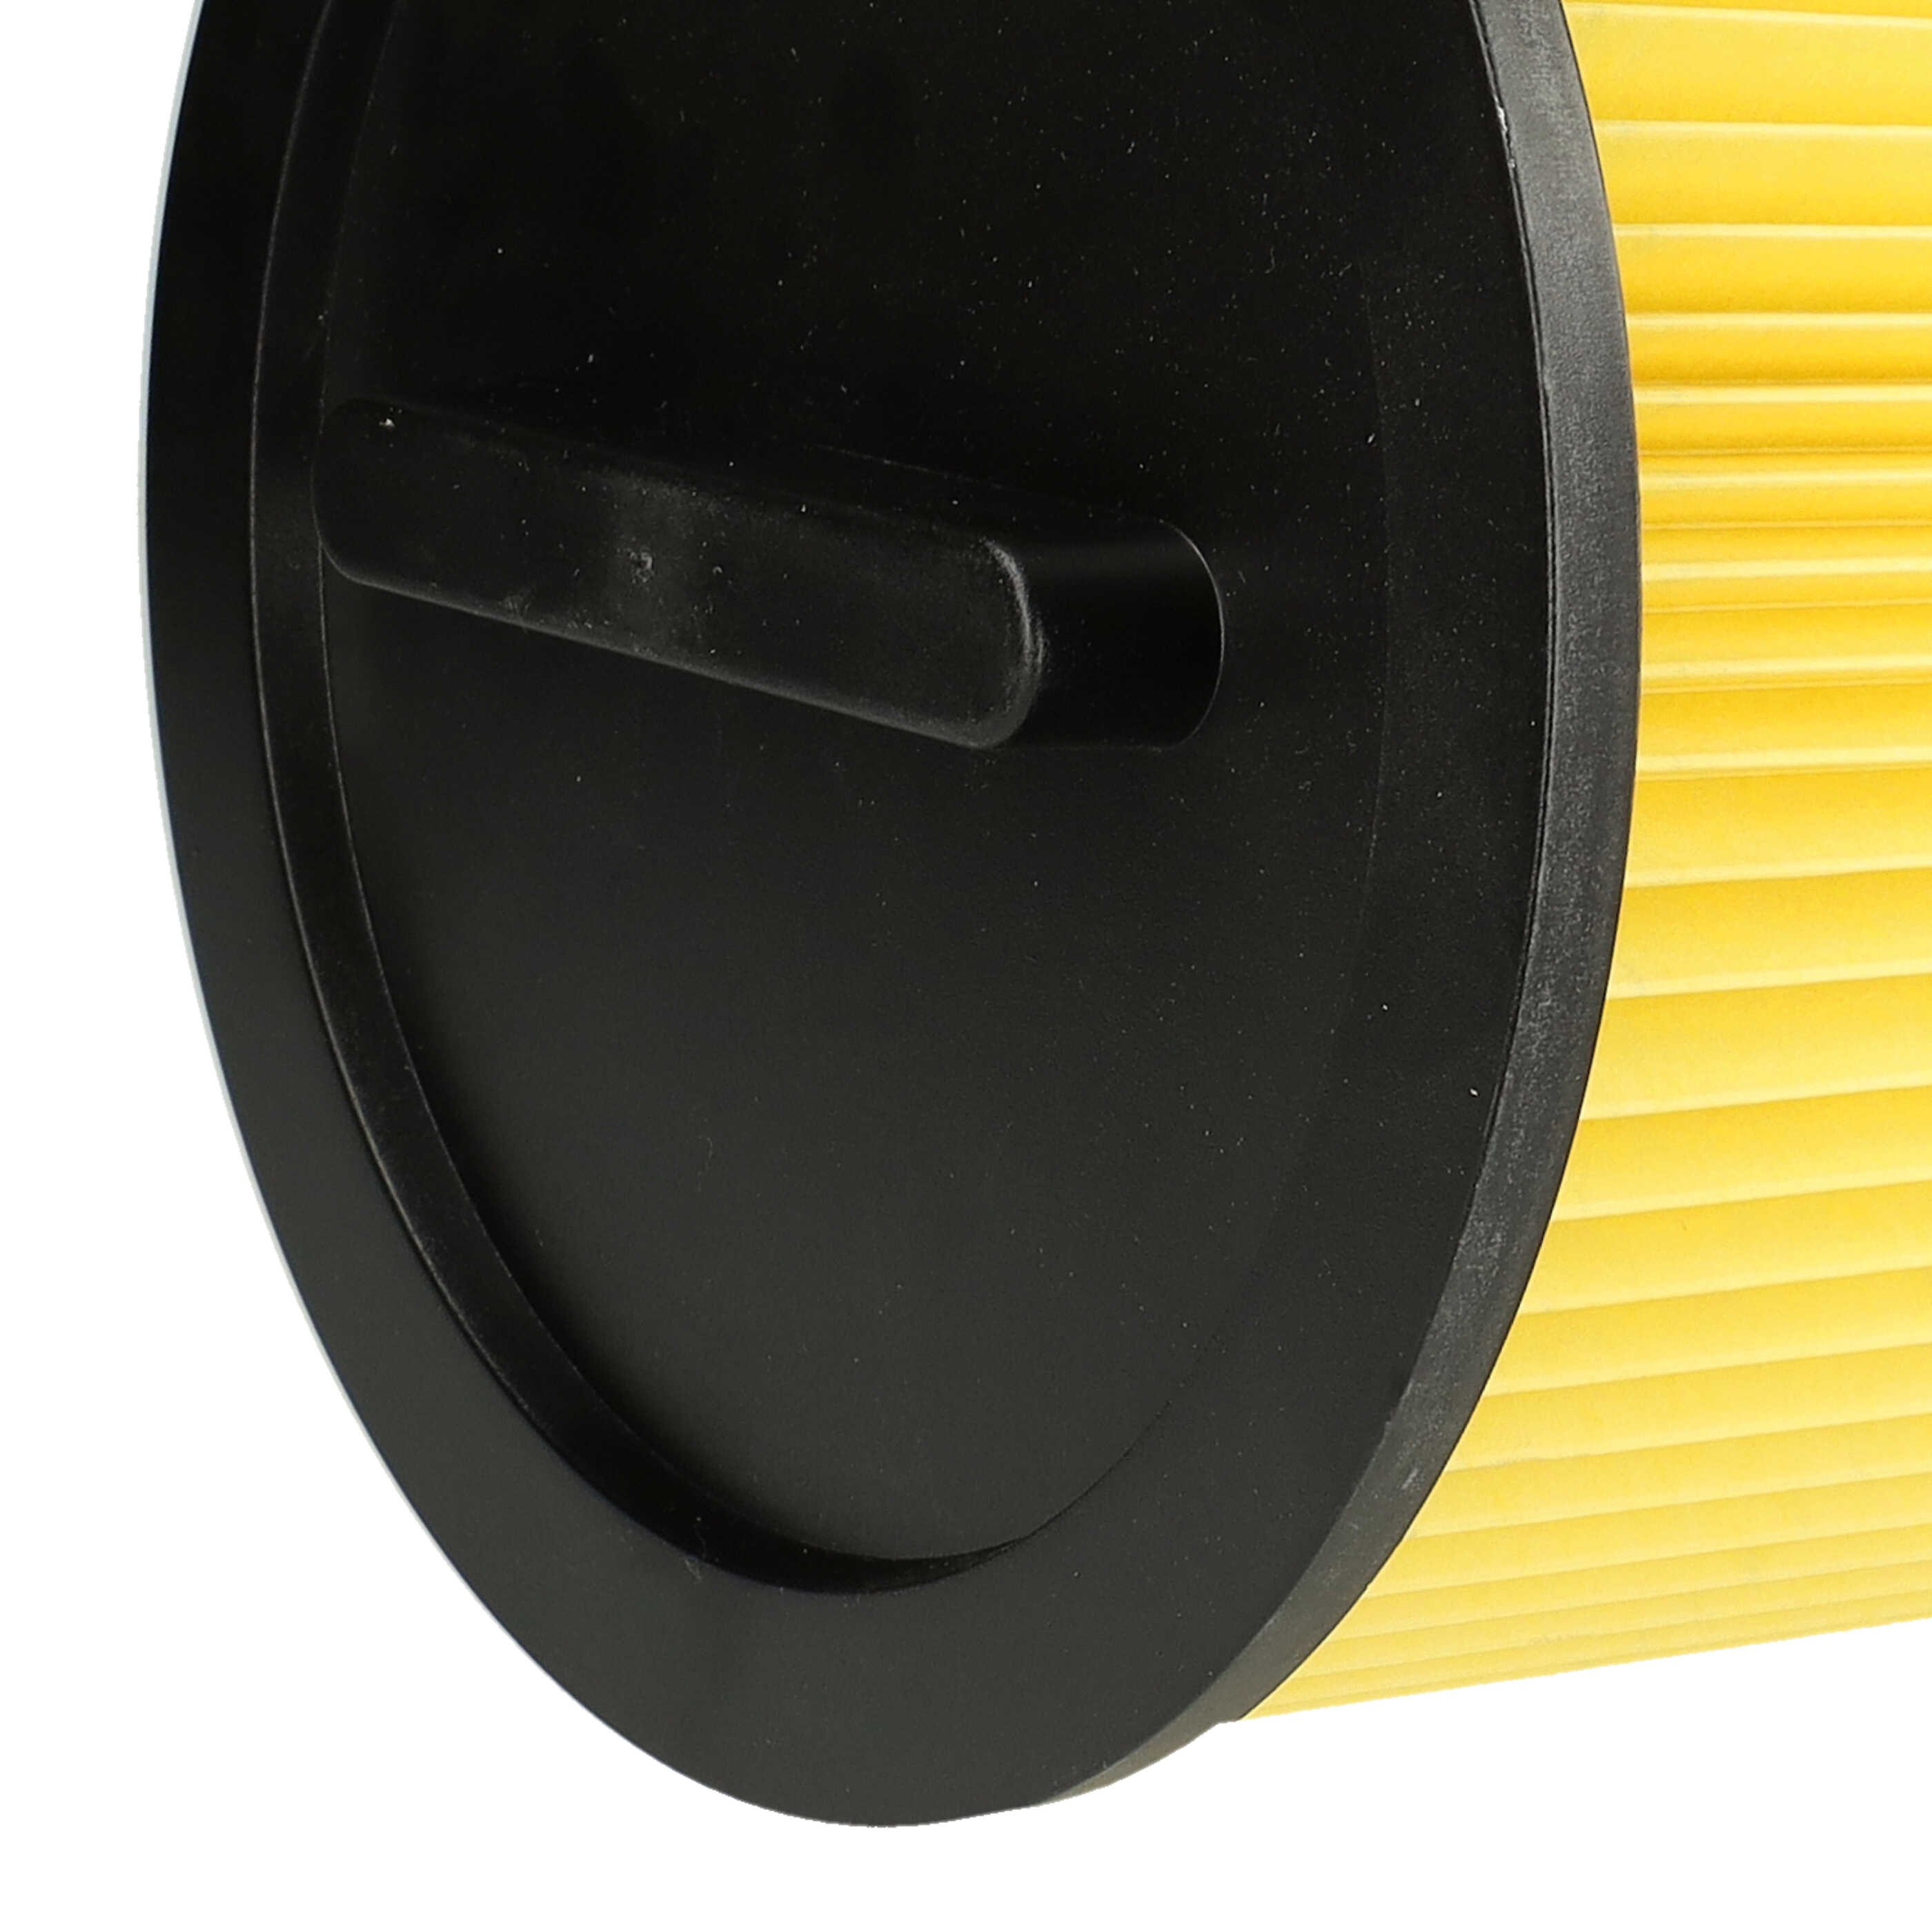 Filtro reemplaza Einhell 2351113 para aspiradora filtro de cartucho, negro / amarillo